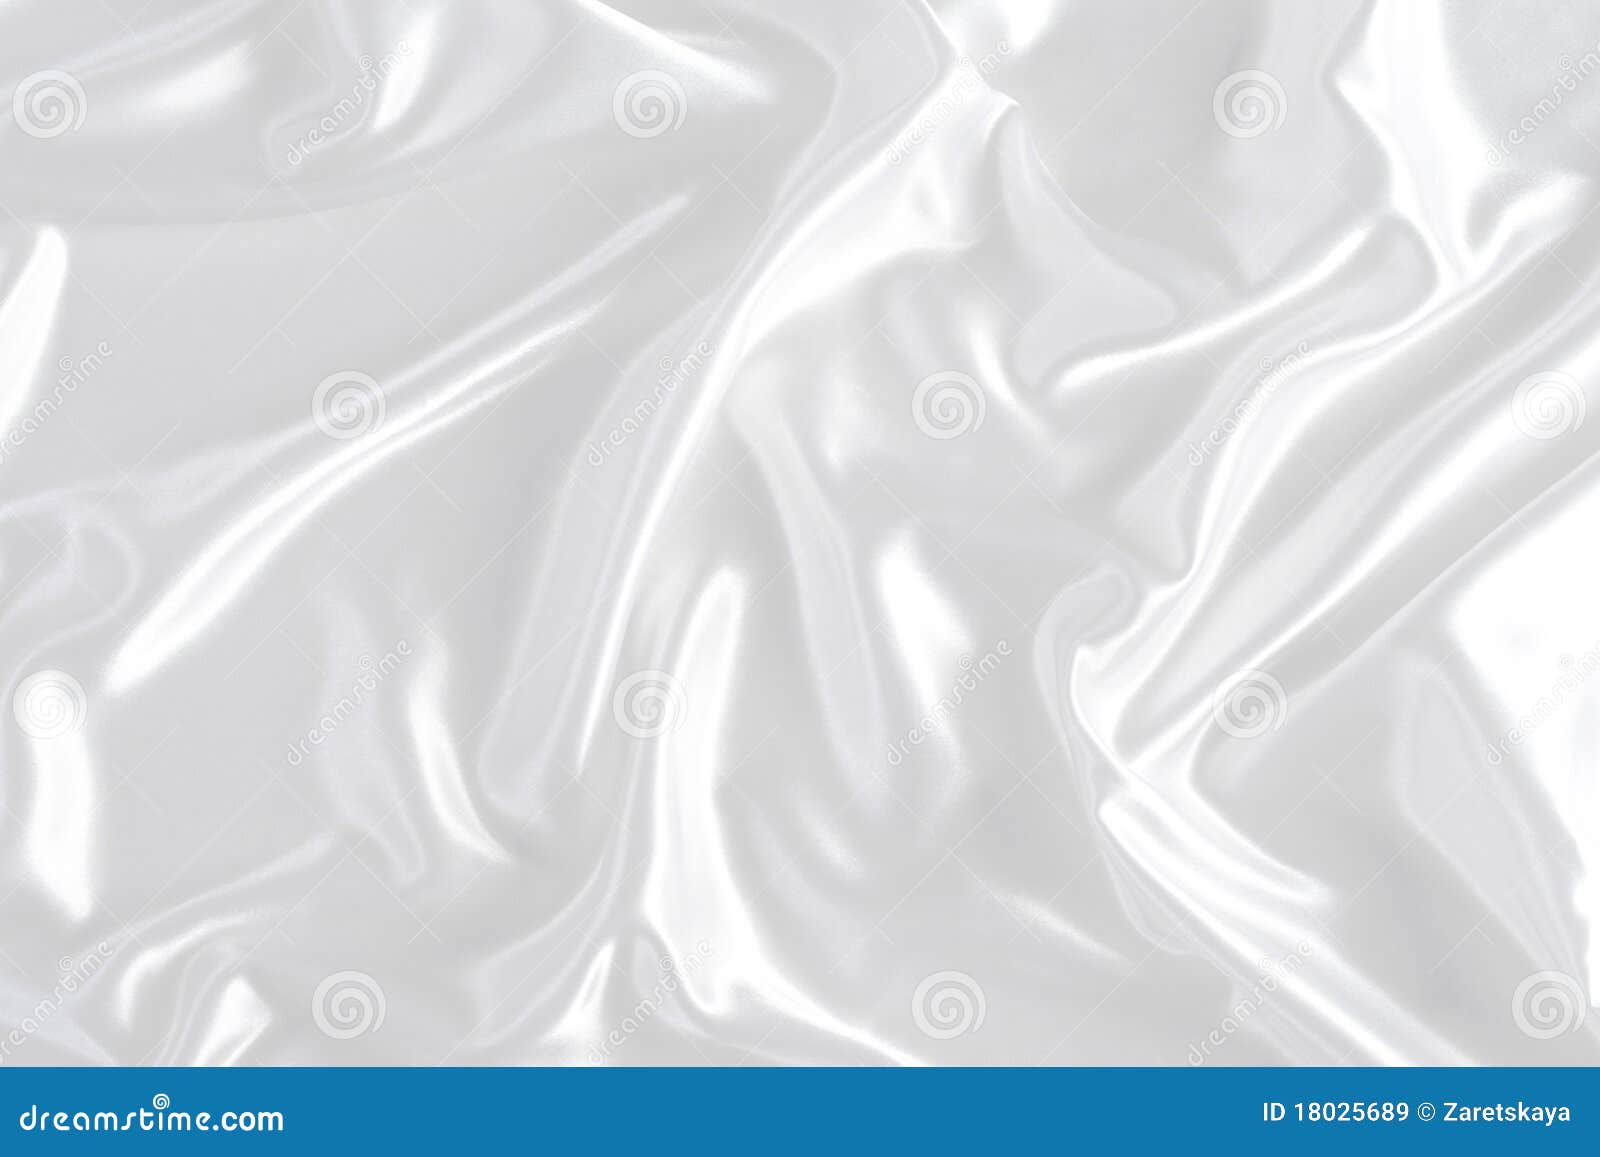 85,502 White Silk Texture Stock Photos - Free & Royalty-Free Stock